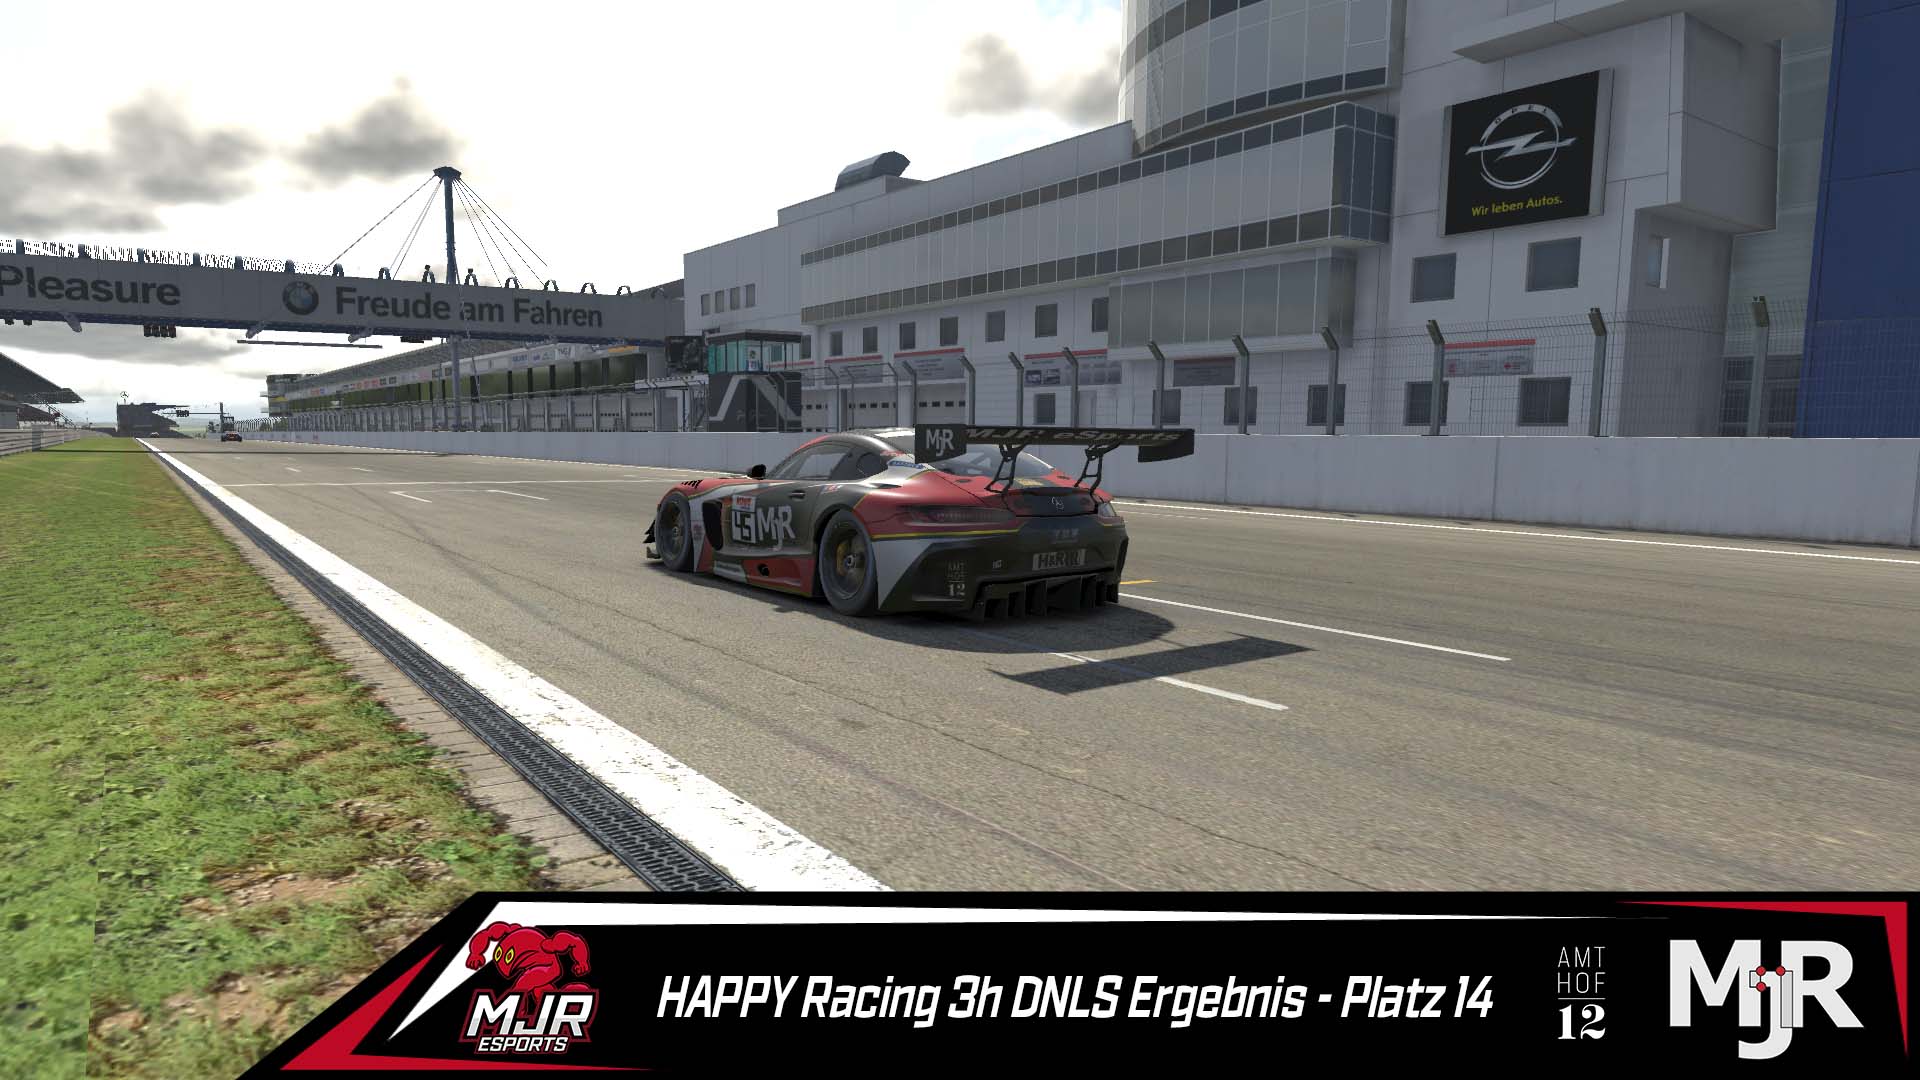 HAPPY Racing 3h DNLS P14